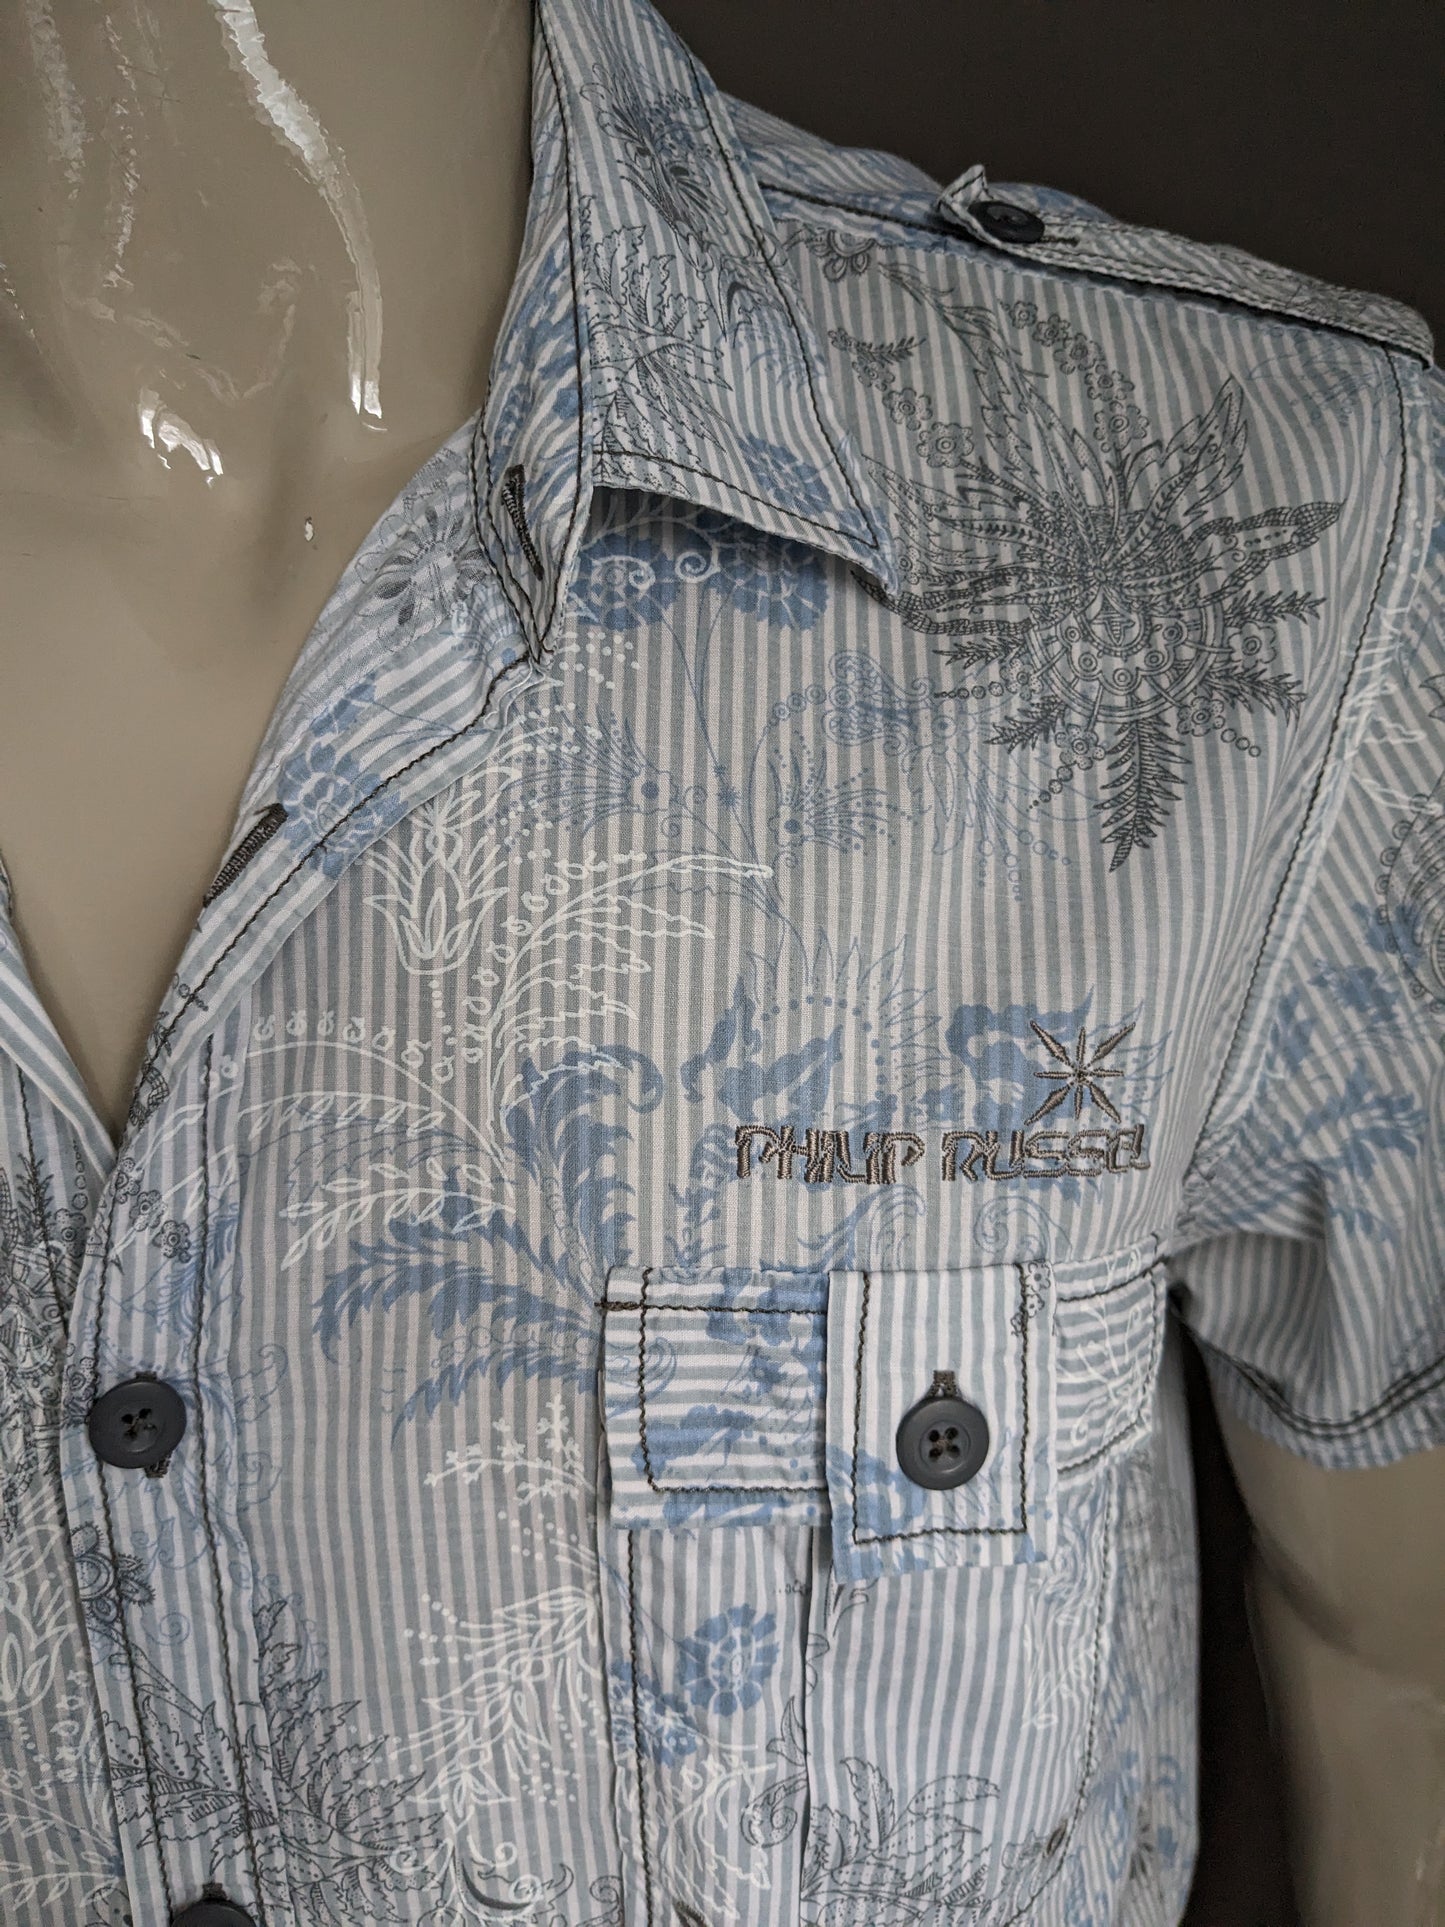 Philip Russel overhemd korte mouw. Blauw grijze print. Maat XL.